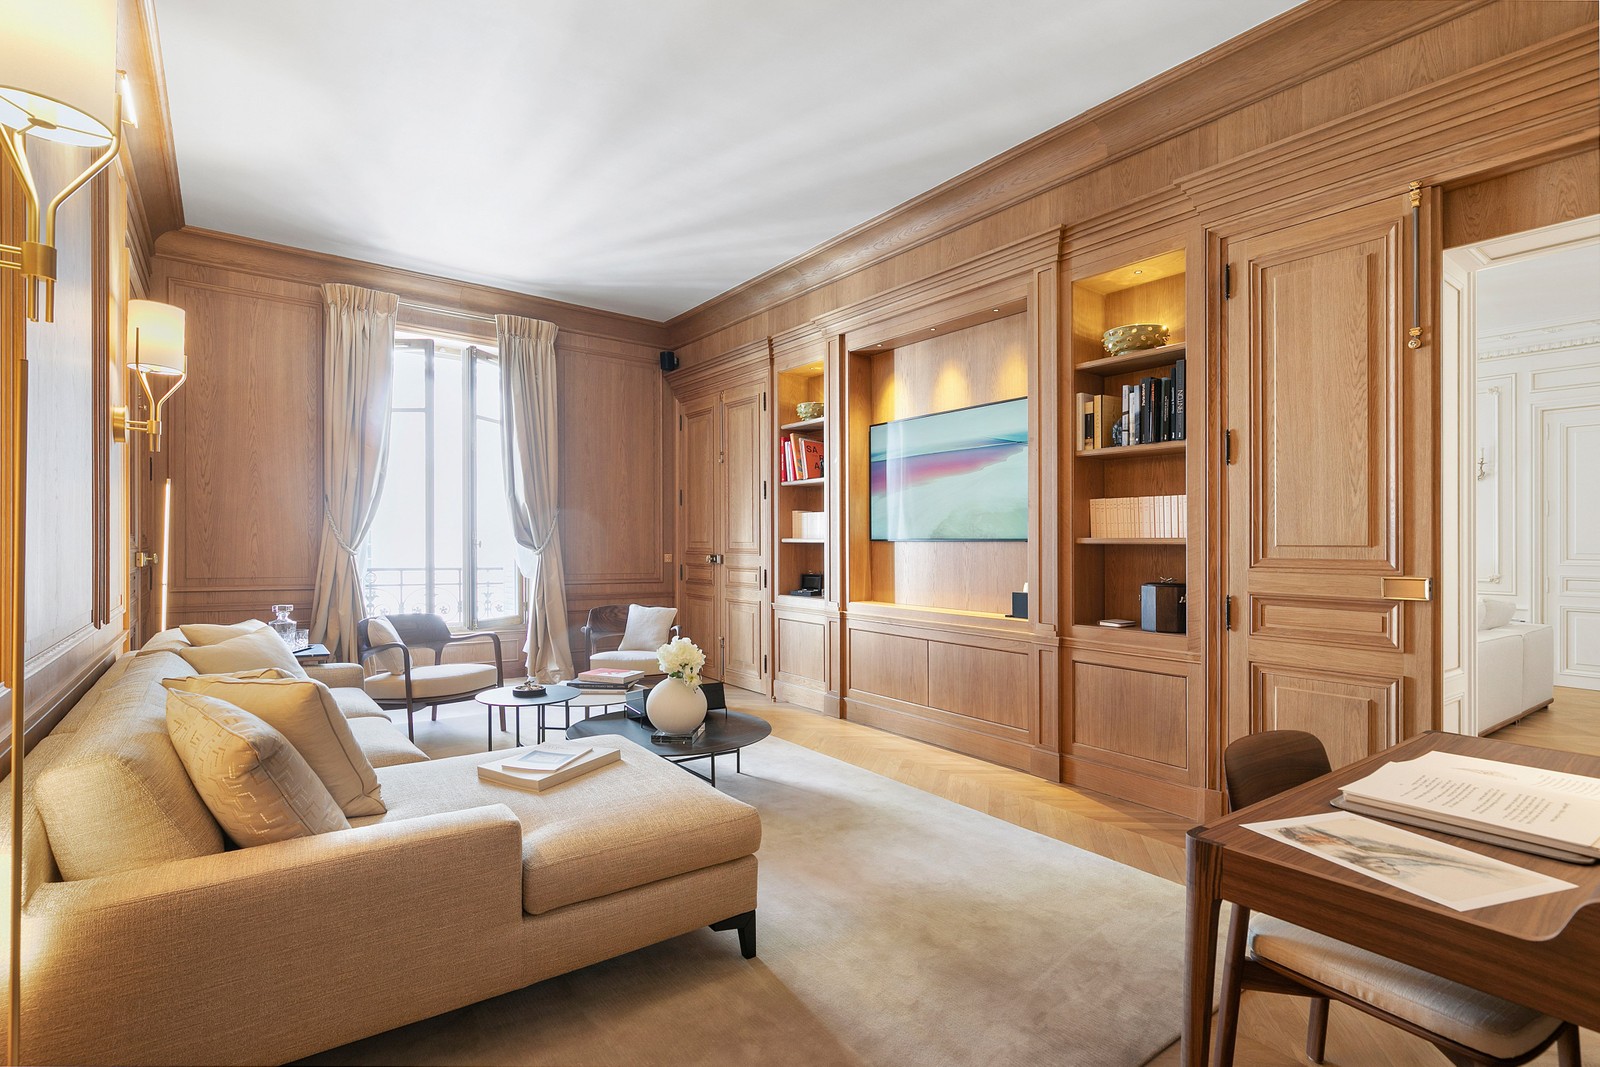 7. Apartments / Flats for Sale at Paris, Paris,75008 France